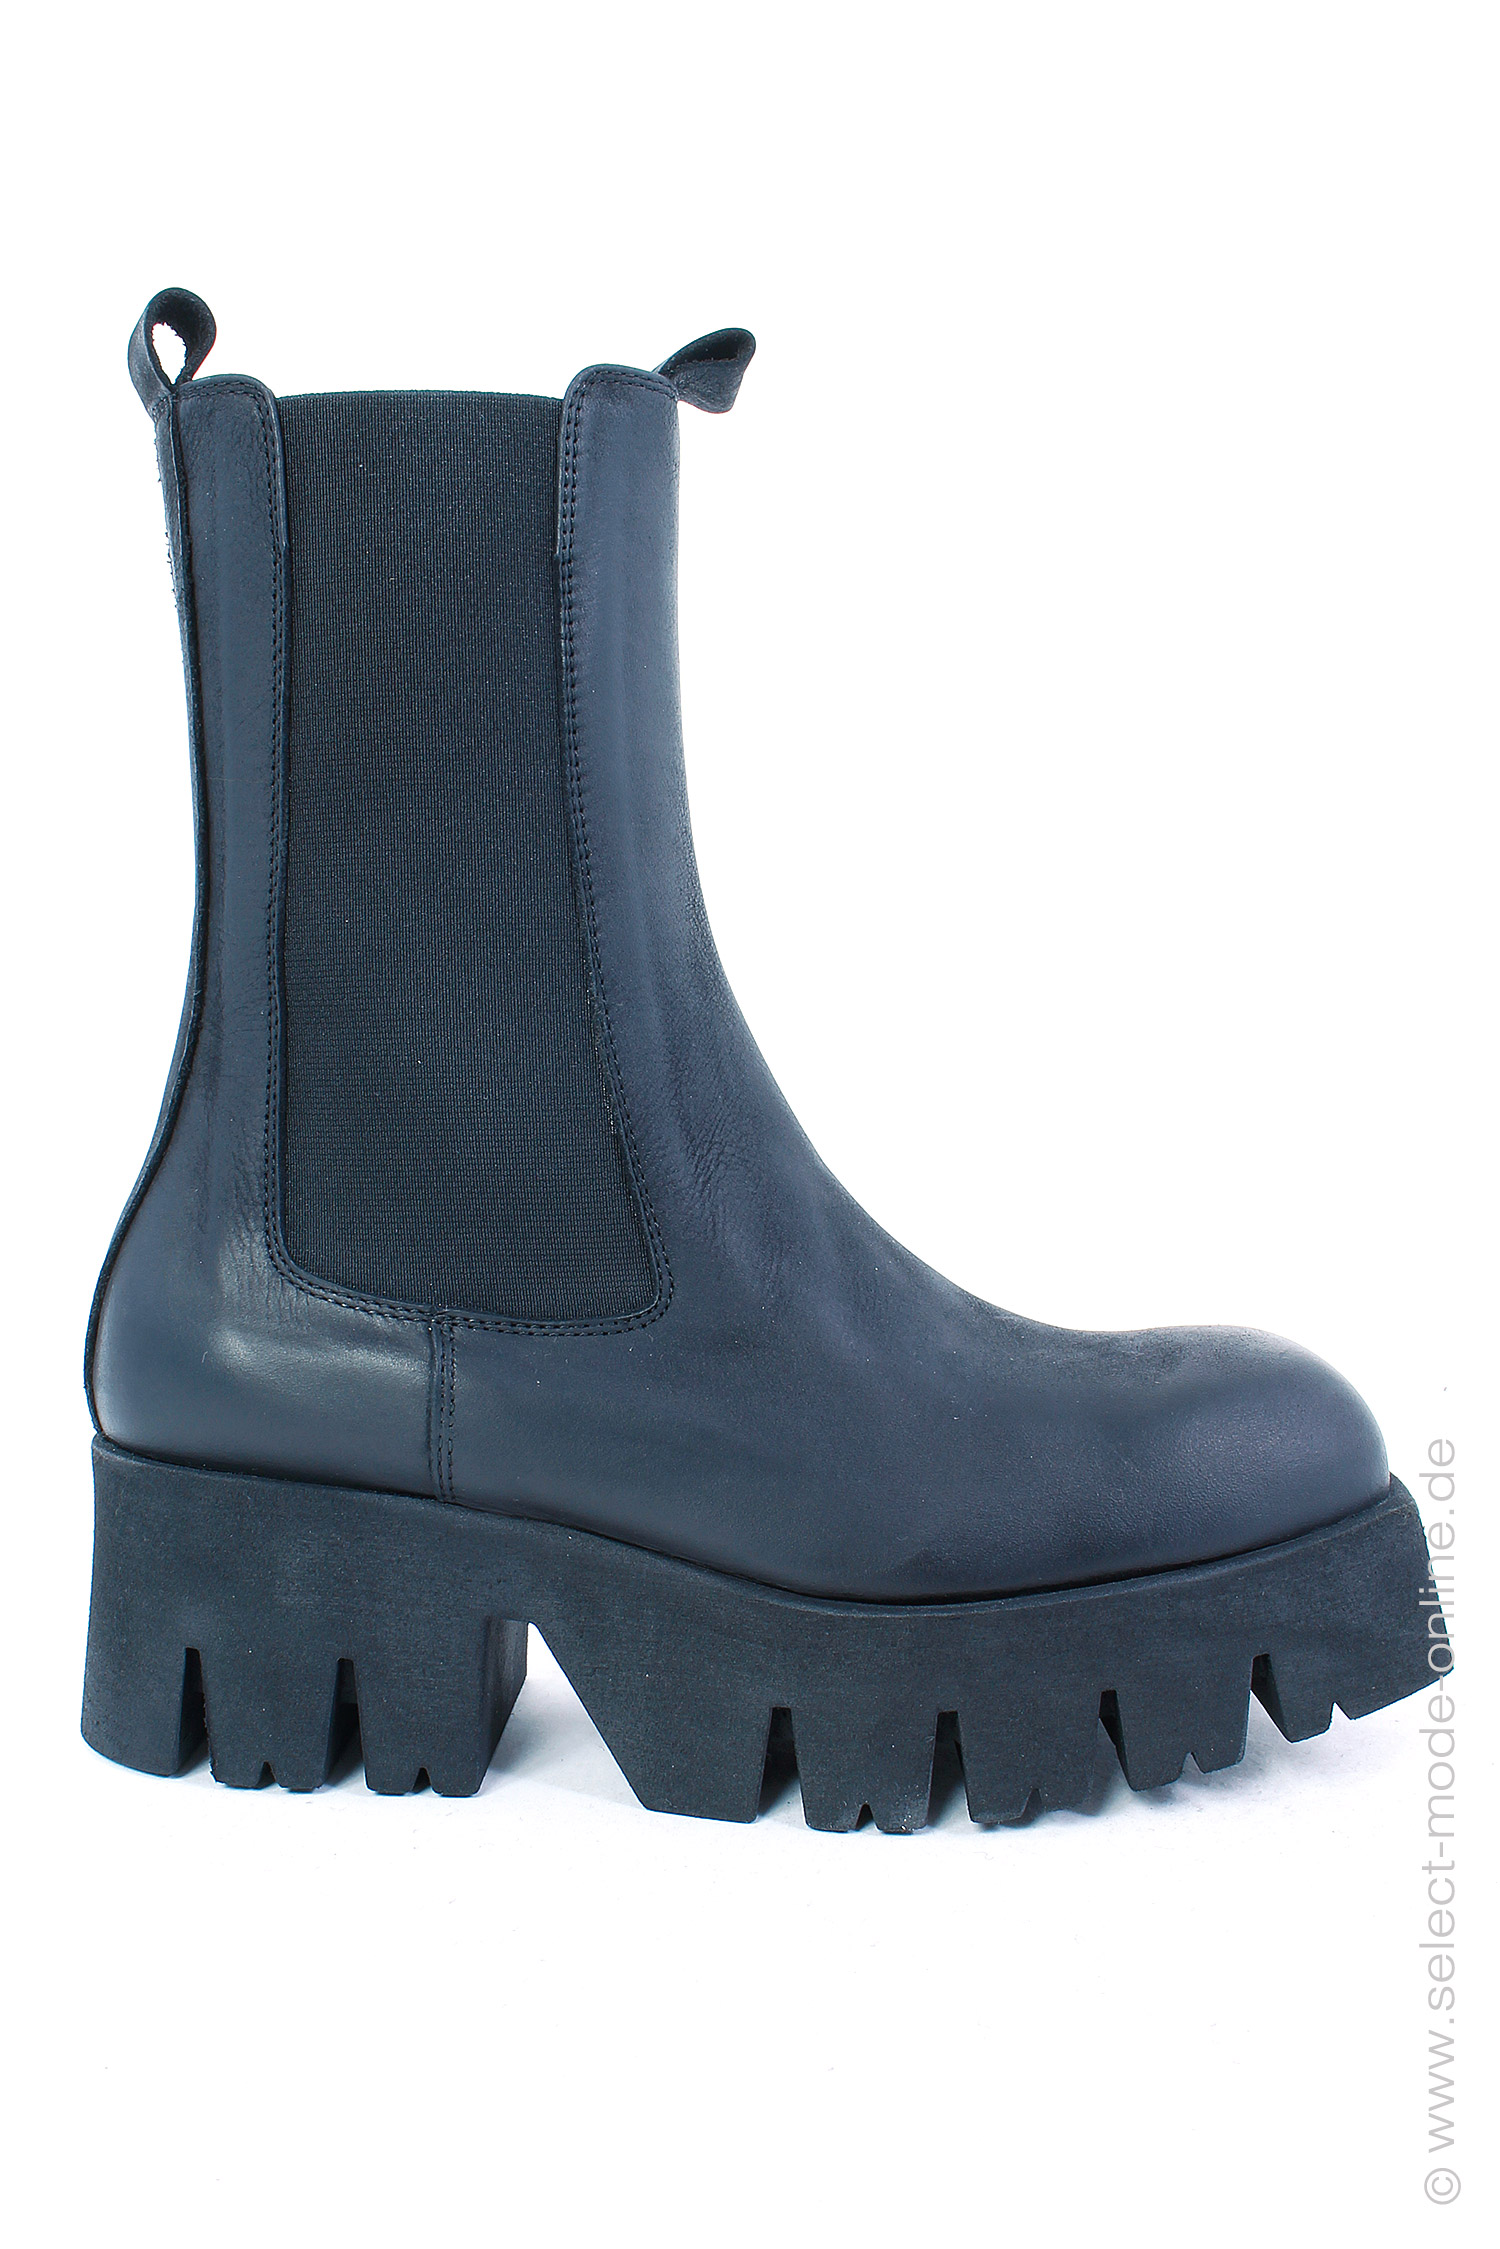 Eckige Chelsea Boots - schwarz - 4224